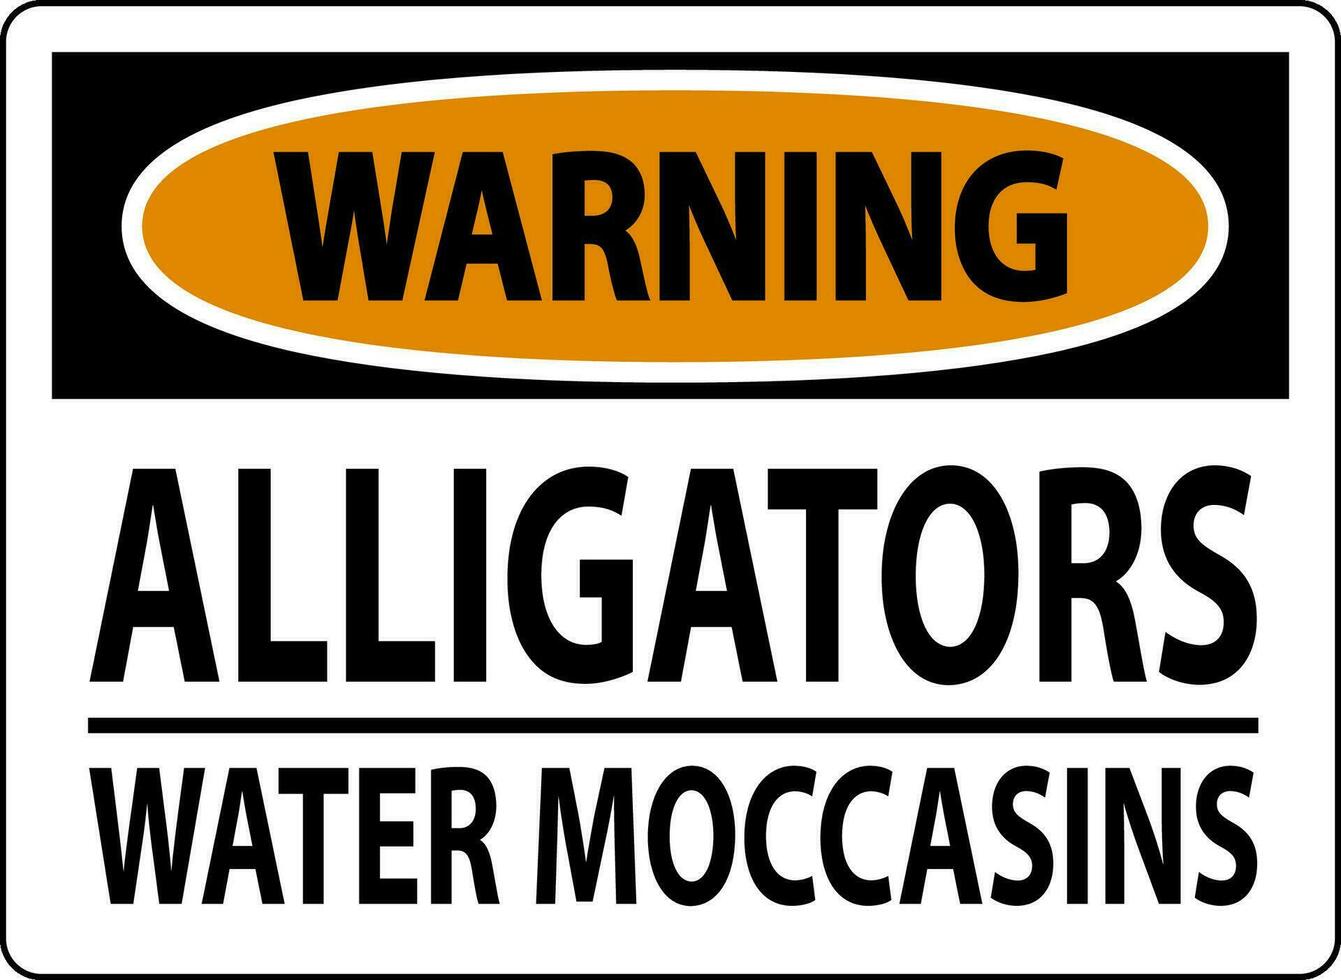 advertencia firmar caimanes - agua mocasines vector